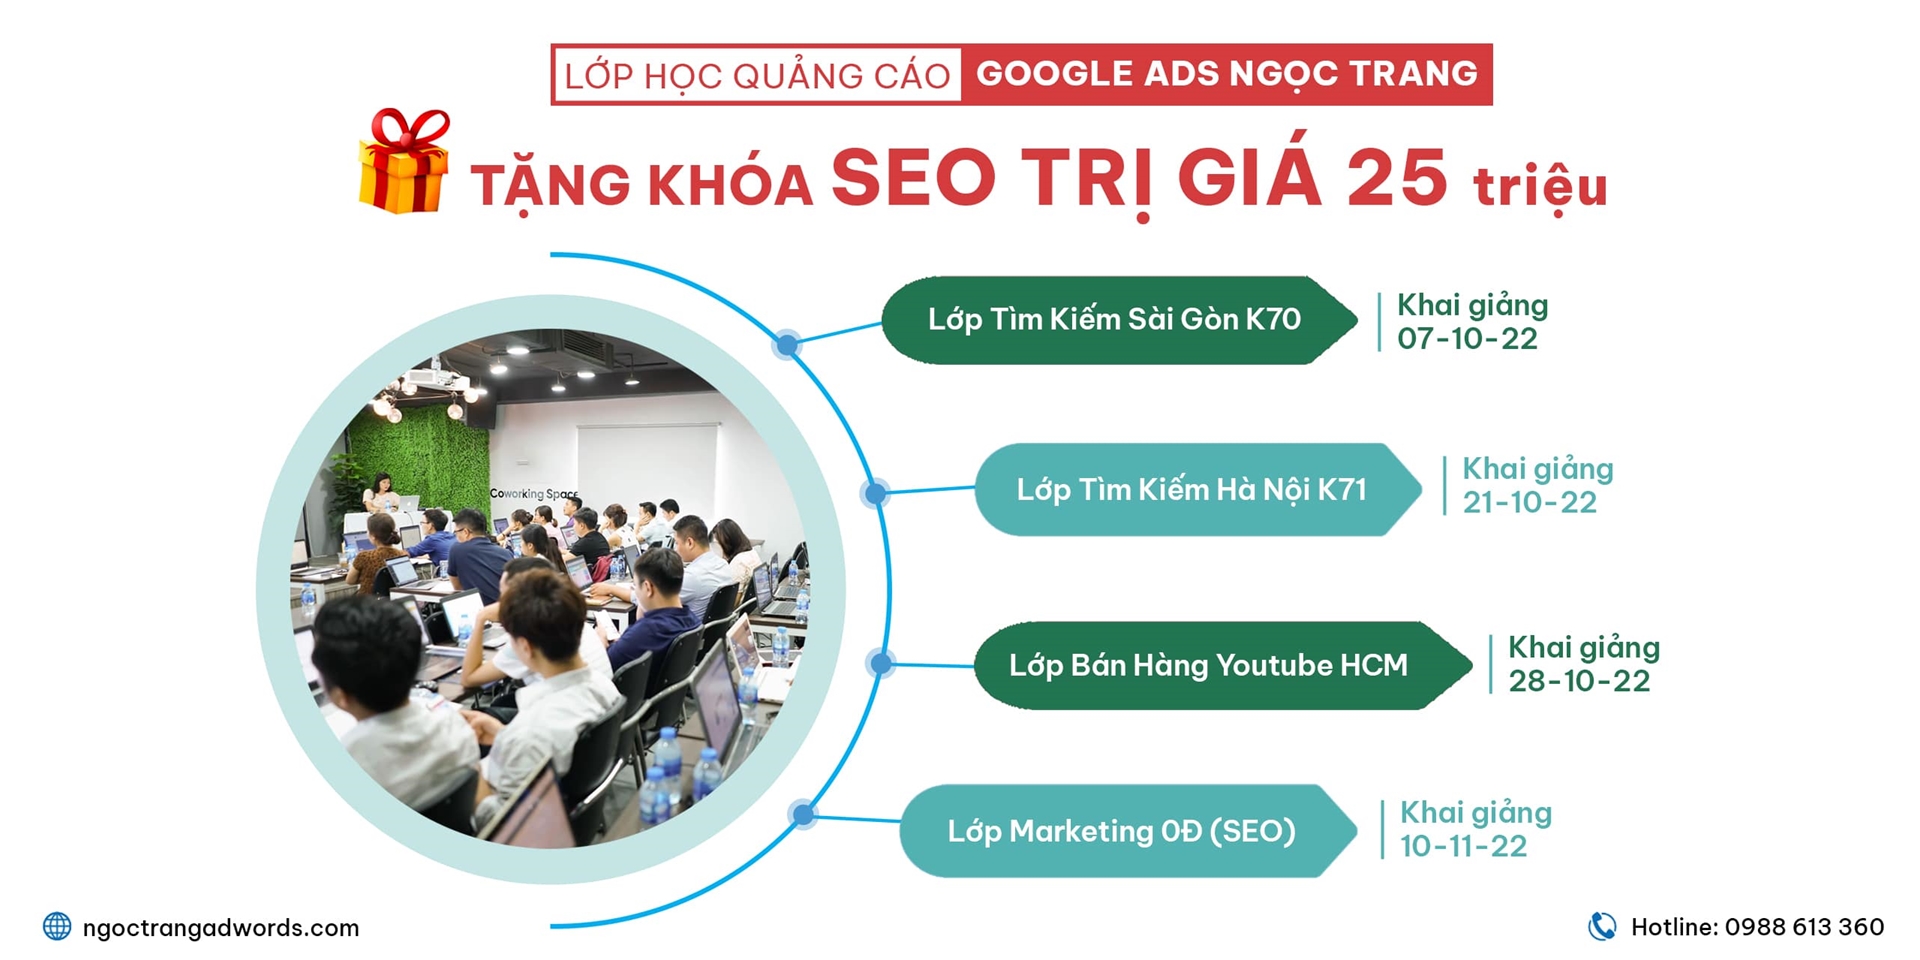 Lịch học tổng hợp  lớp học quảng cáo Google Ads Ngọc Trang